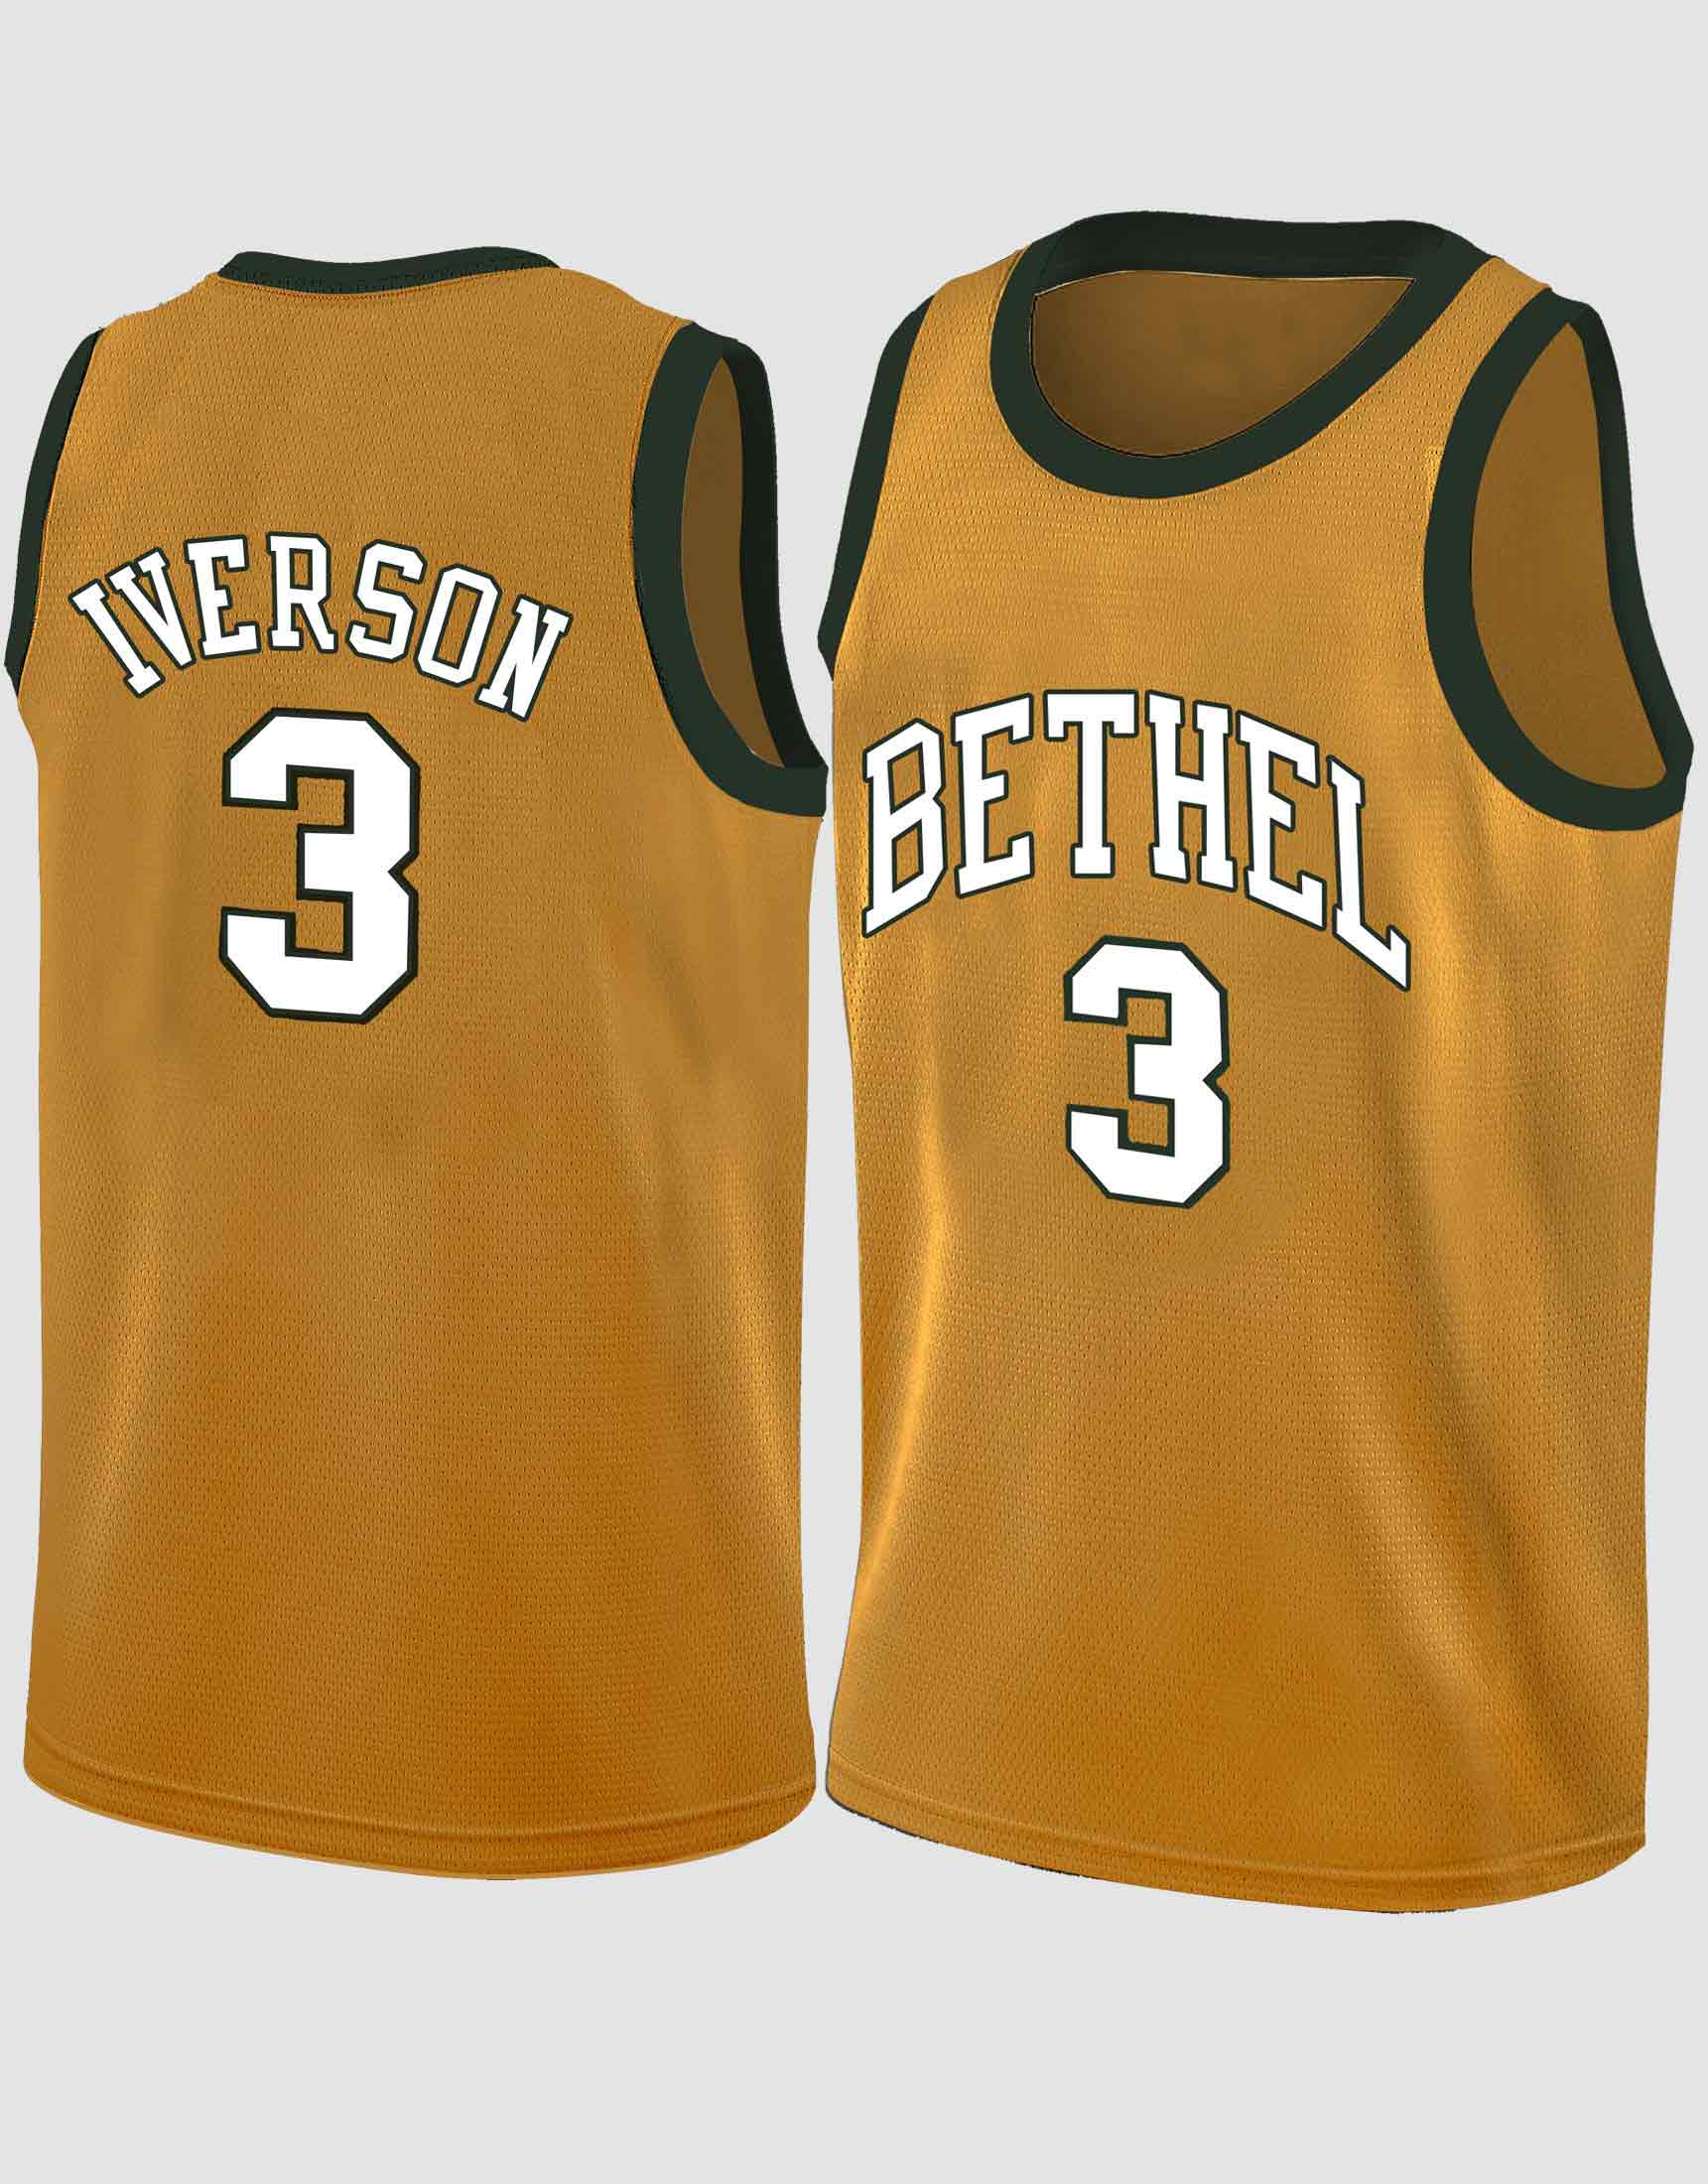 Allen Iverson #3 Bethel High School Legends Jersey - Depop